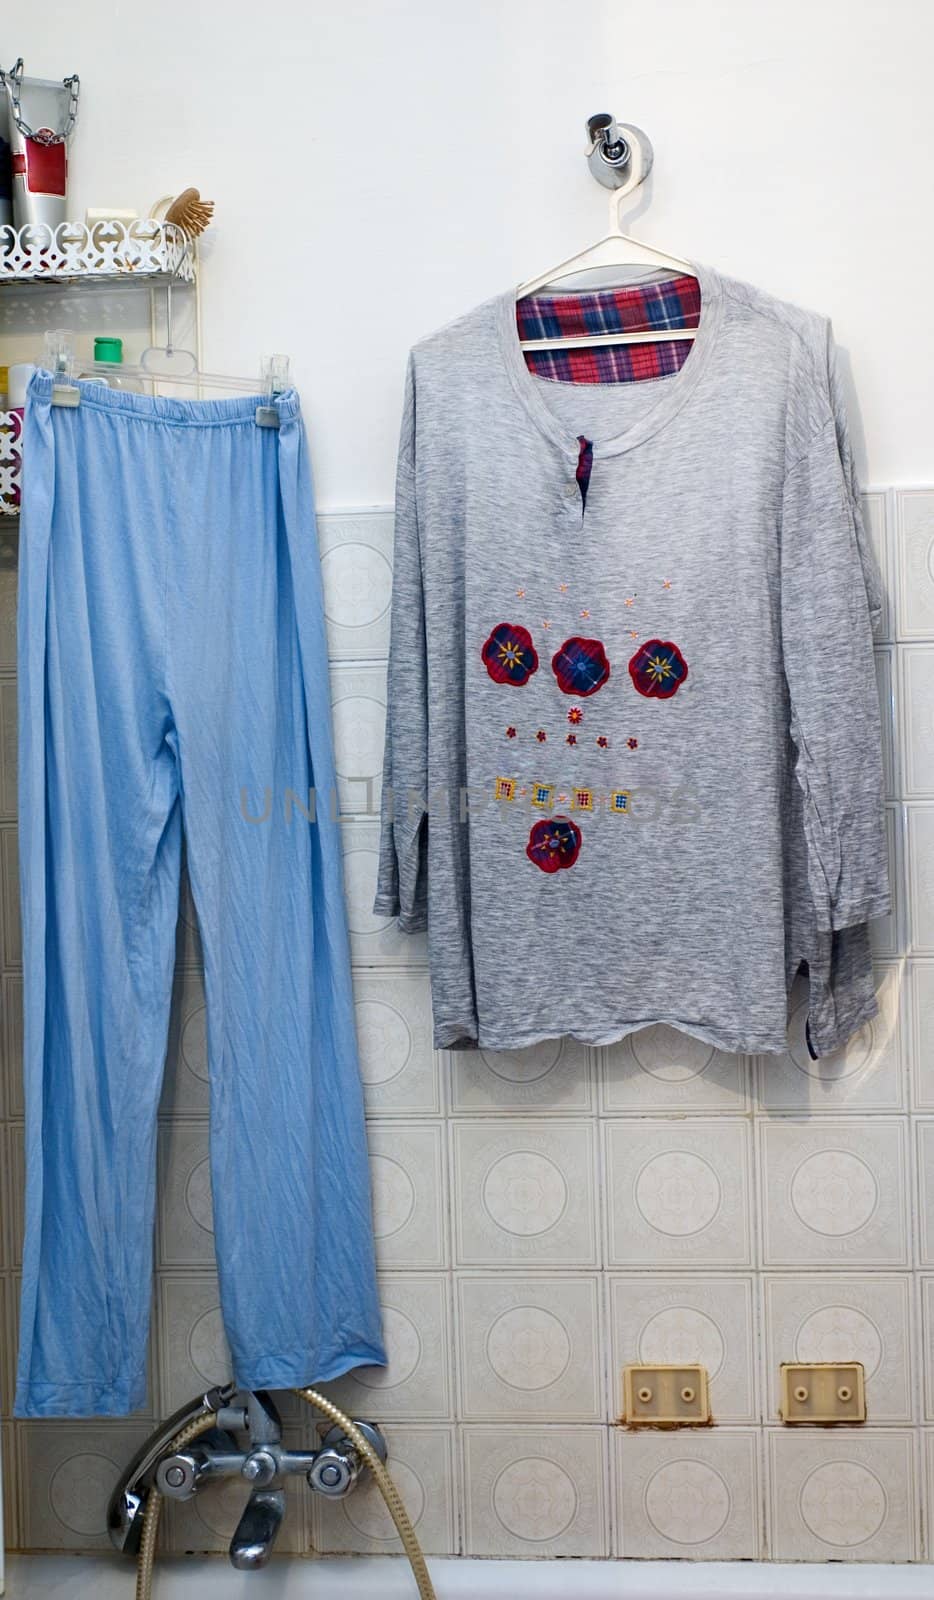 Pyjama hanging to dry